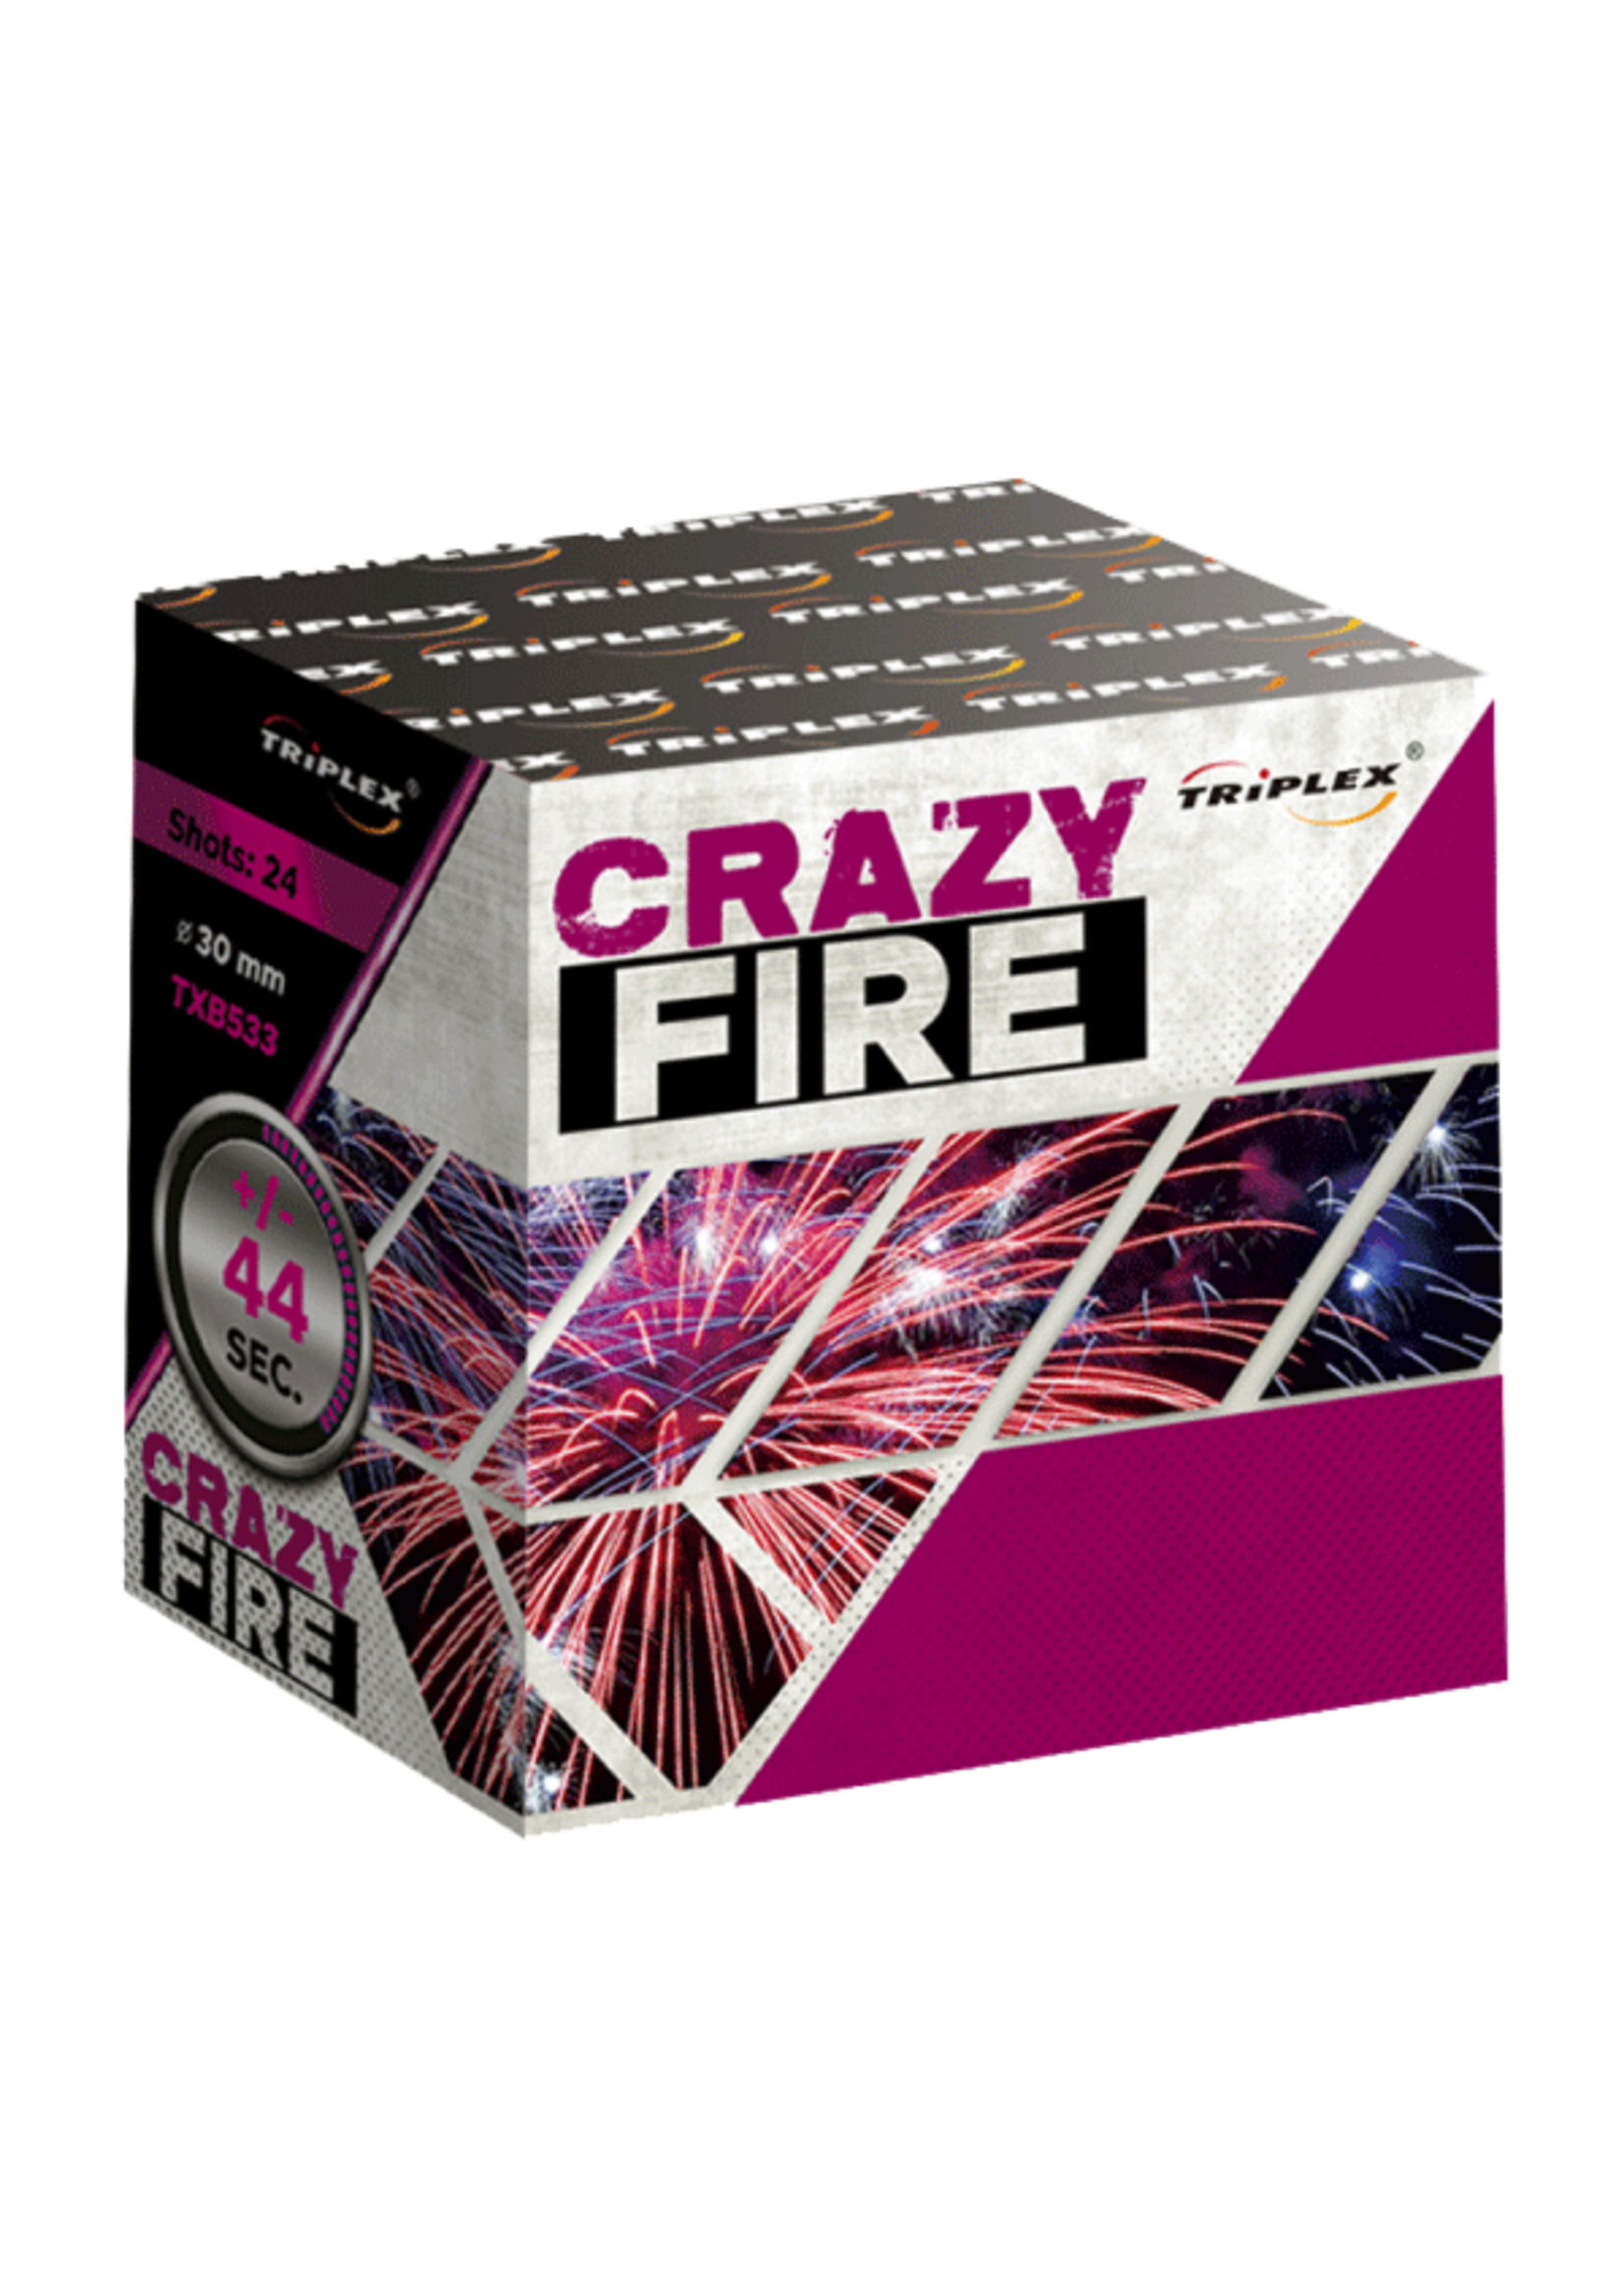 Triplex TXB533 Crazy Fire 24 shots